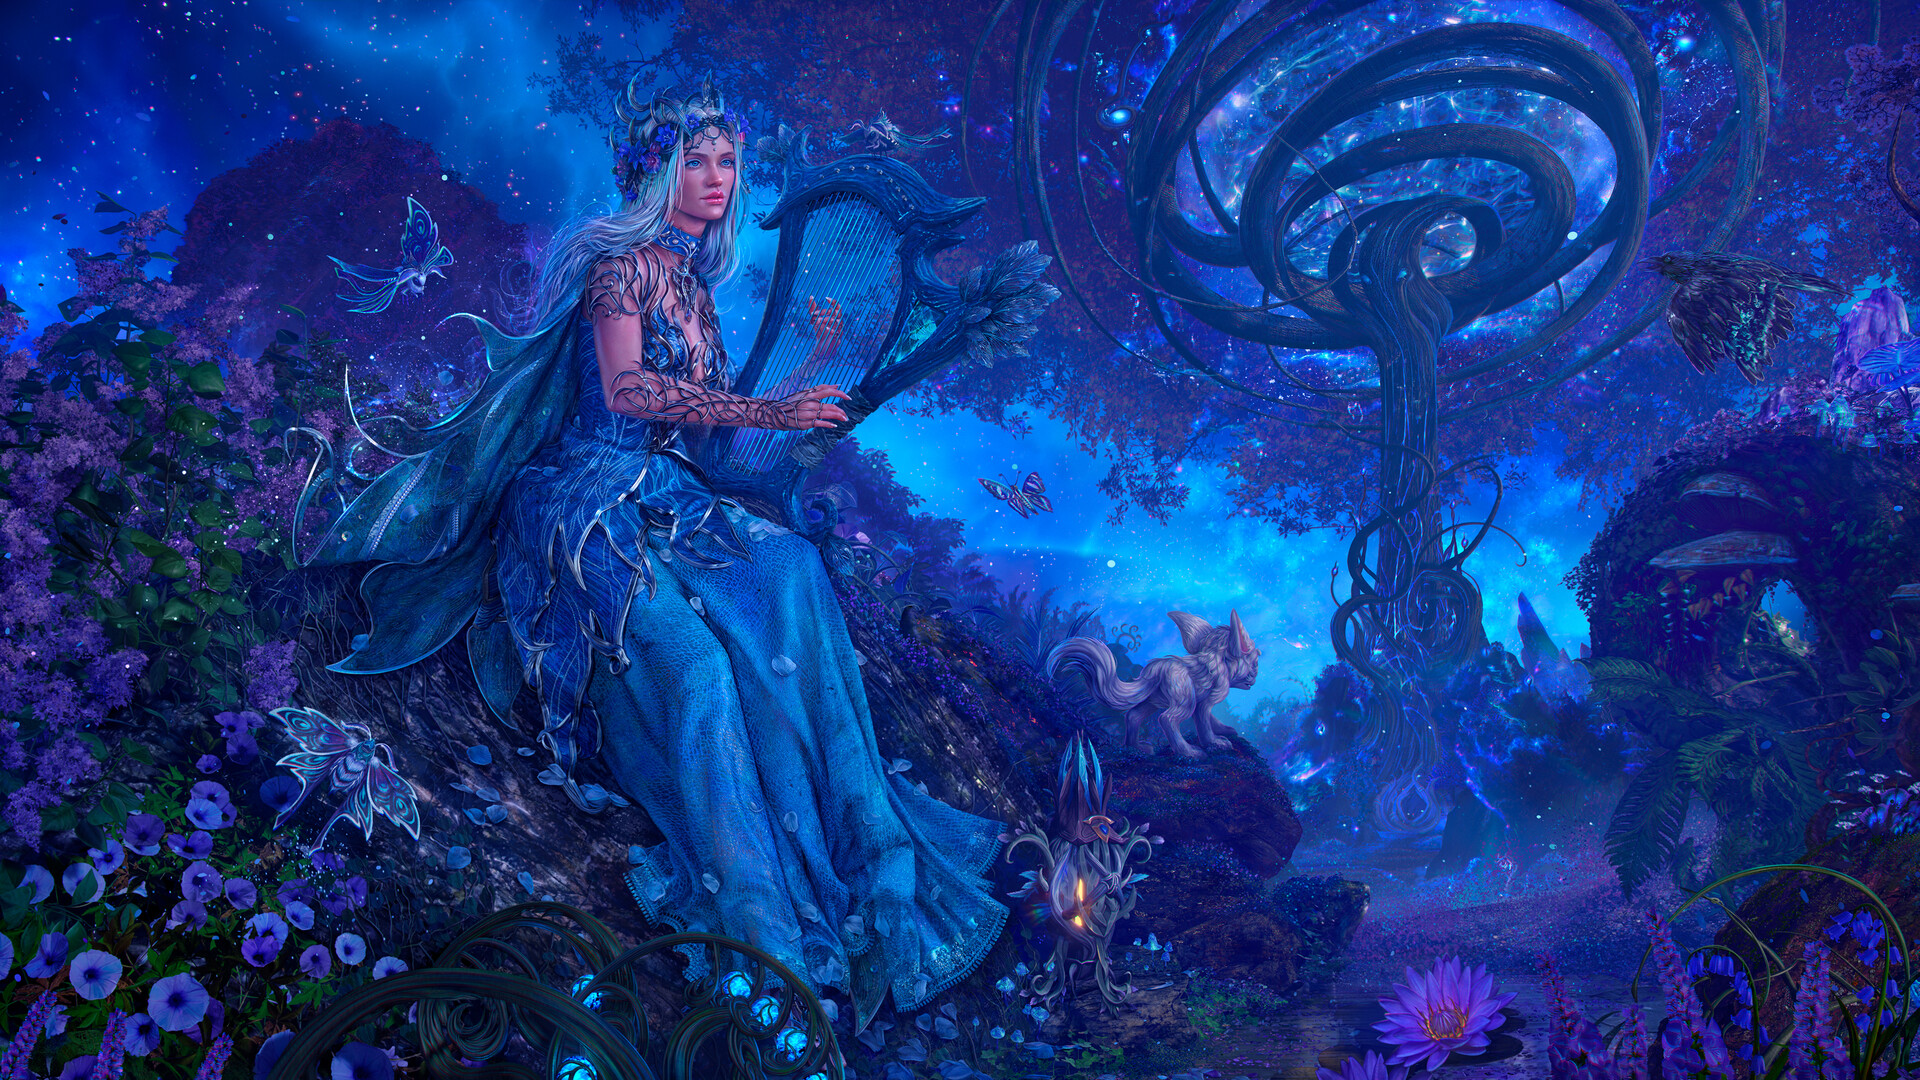 General 1920x1080 Taisa Kislova fantasy art digital art blue hair harp crow trees forest garden butterfly World of Warcraft